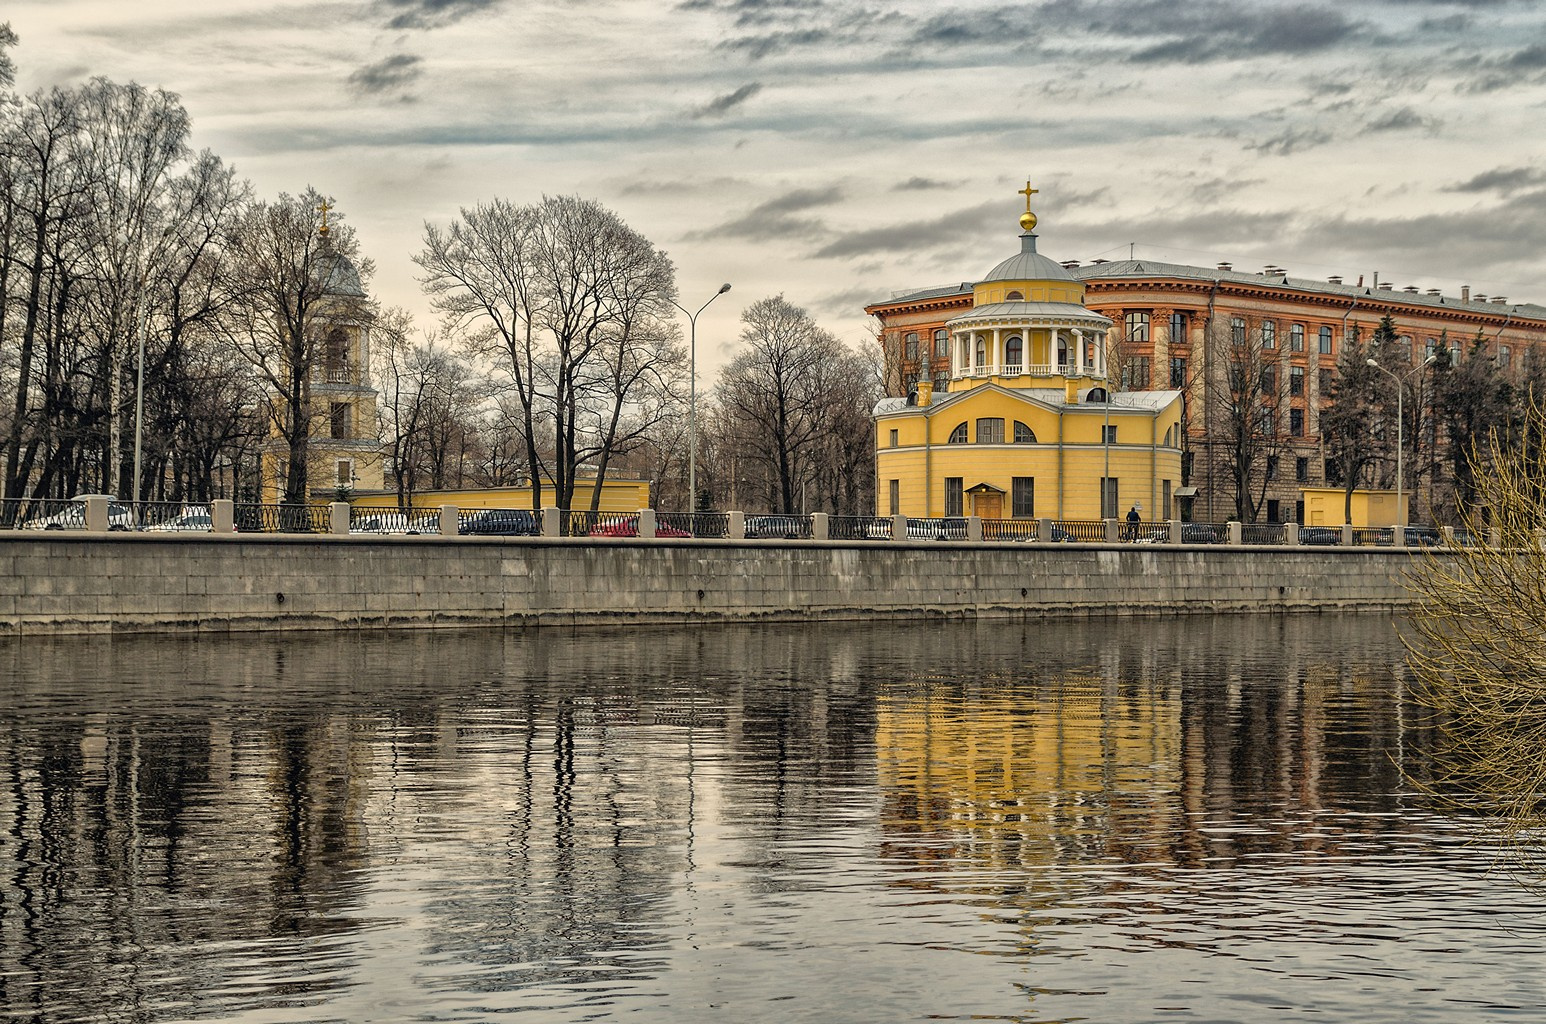 Благовещенская церковь в Петербурге. петербург весна благовещенская церковь невка нева облака